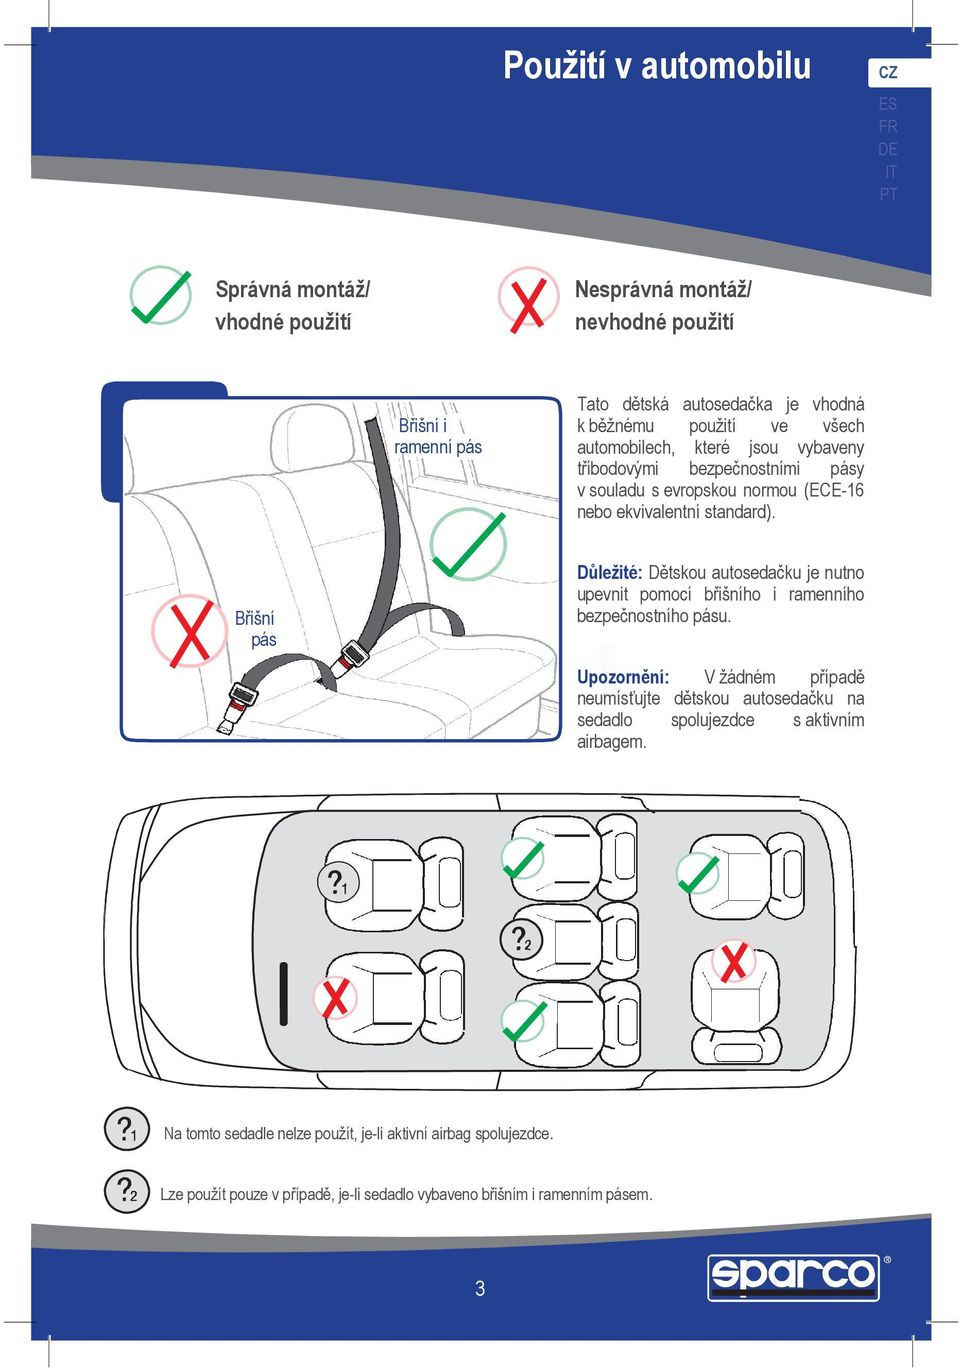 Břišní pás Důležité: Dětskou autosedačku je nutno upevnit pomocí břišního i ramenního bezpečnostního pásu.